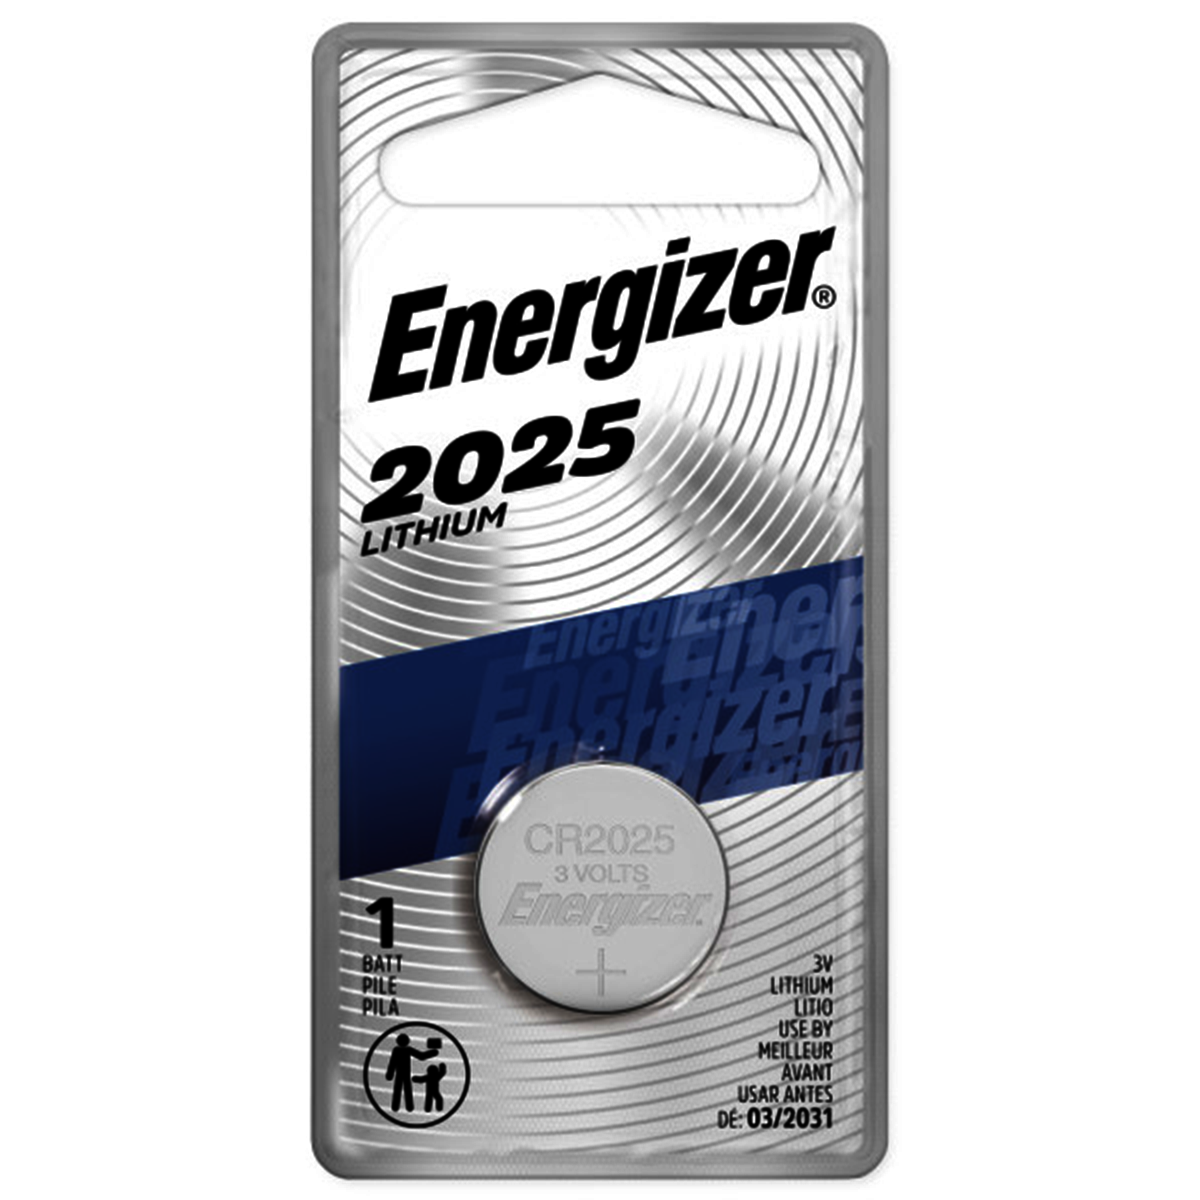 Airgas - E33ECR2025BP Energizer® 3 Volt Lithium Battery (1 Package)